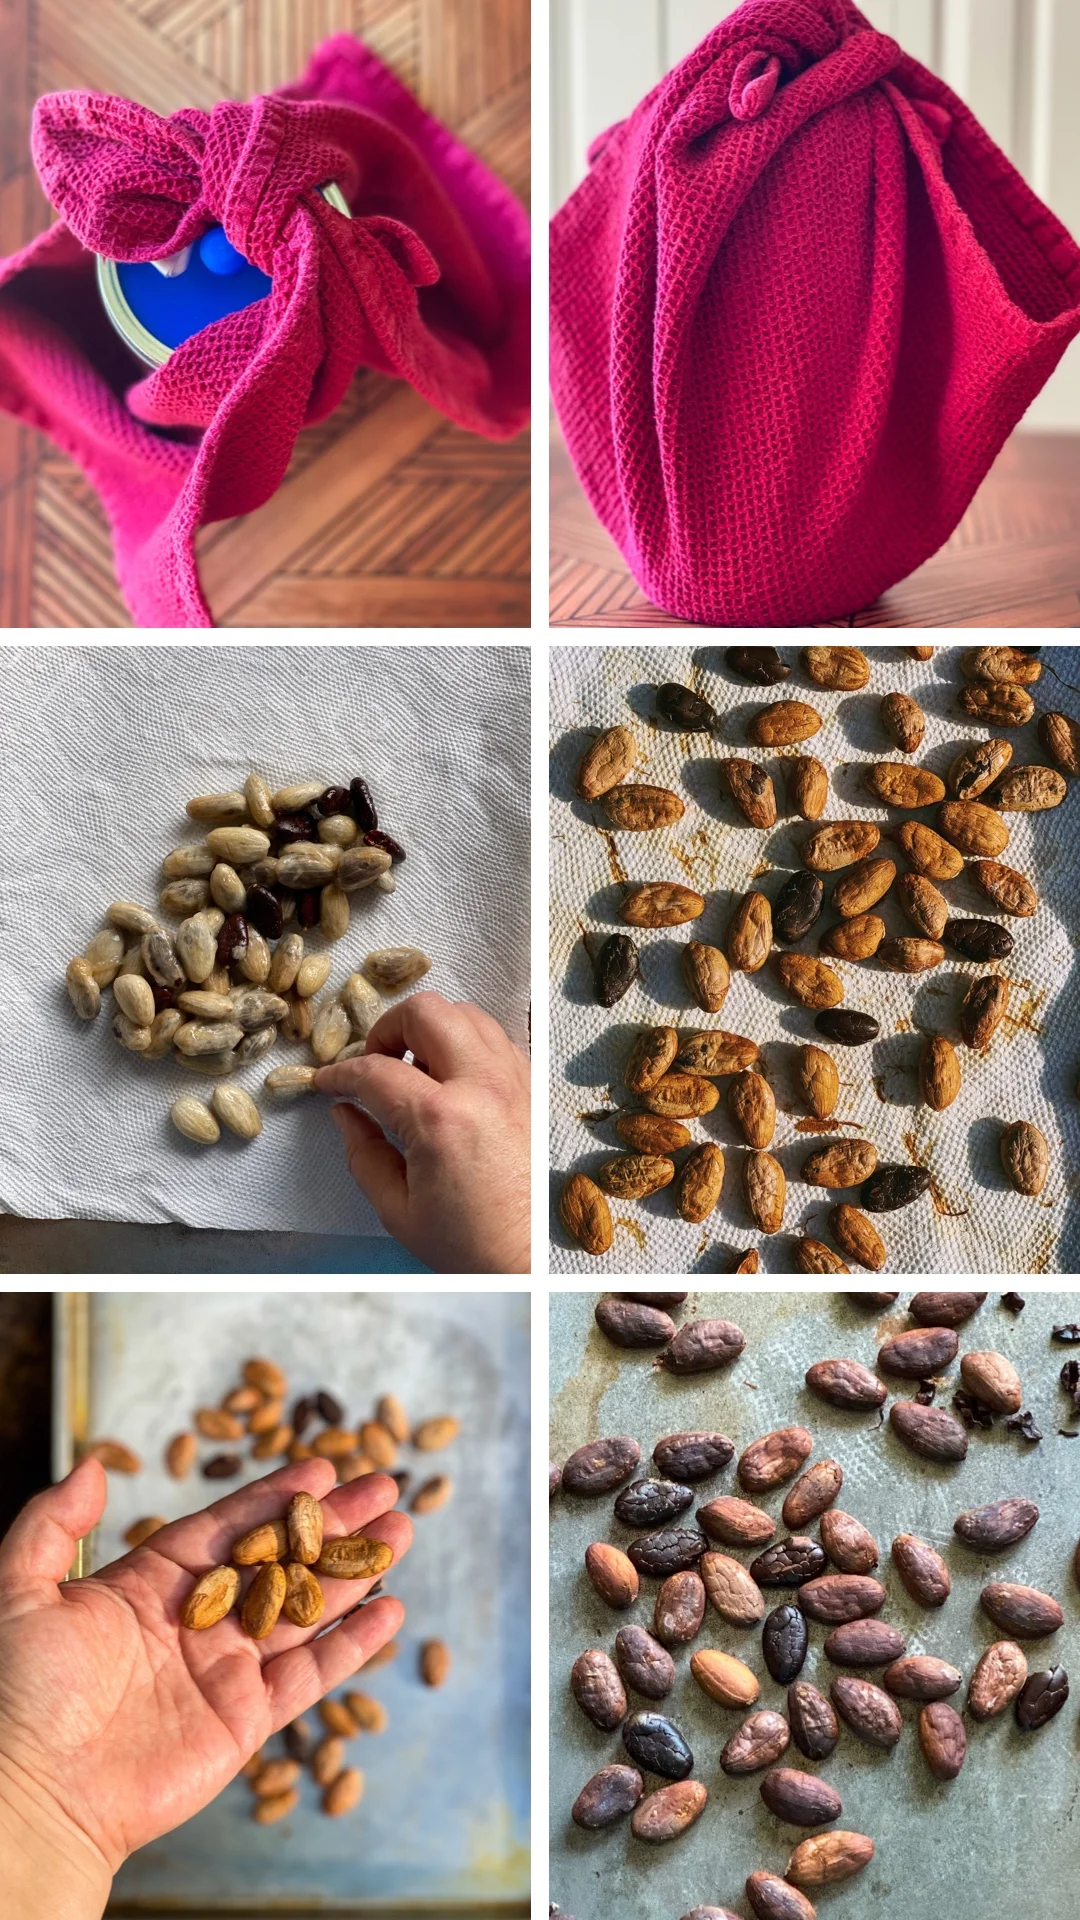 Un collage que muestra cómo procesar el cacao.